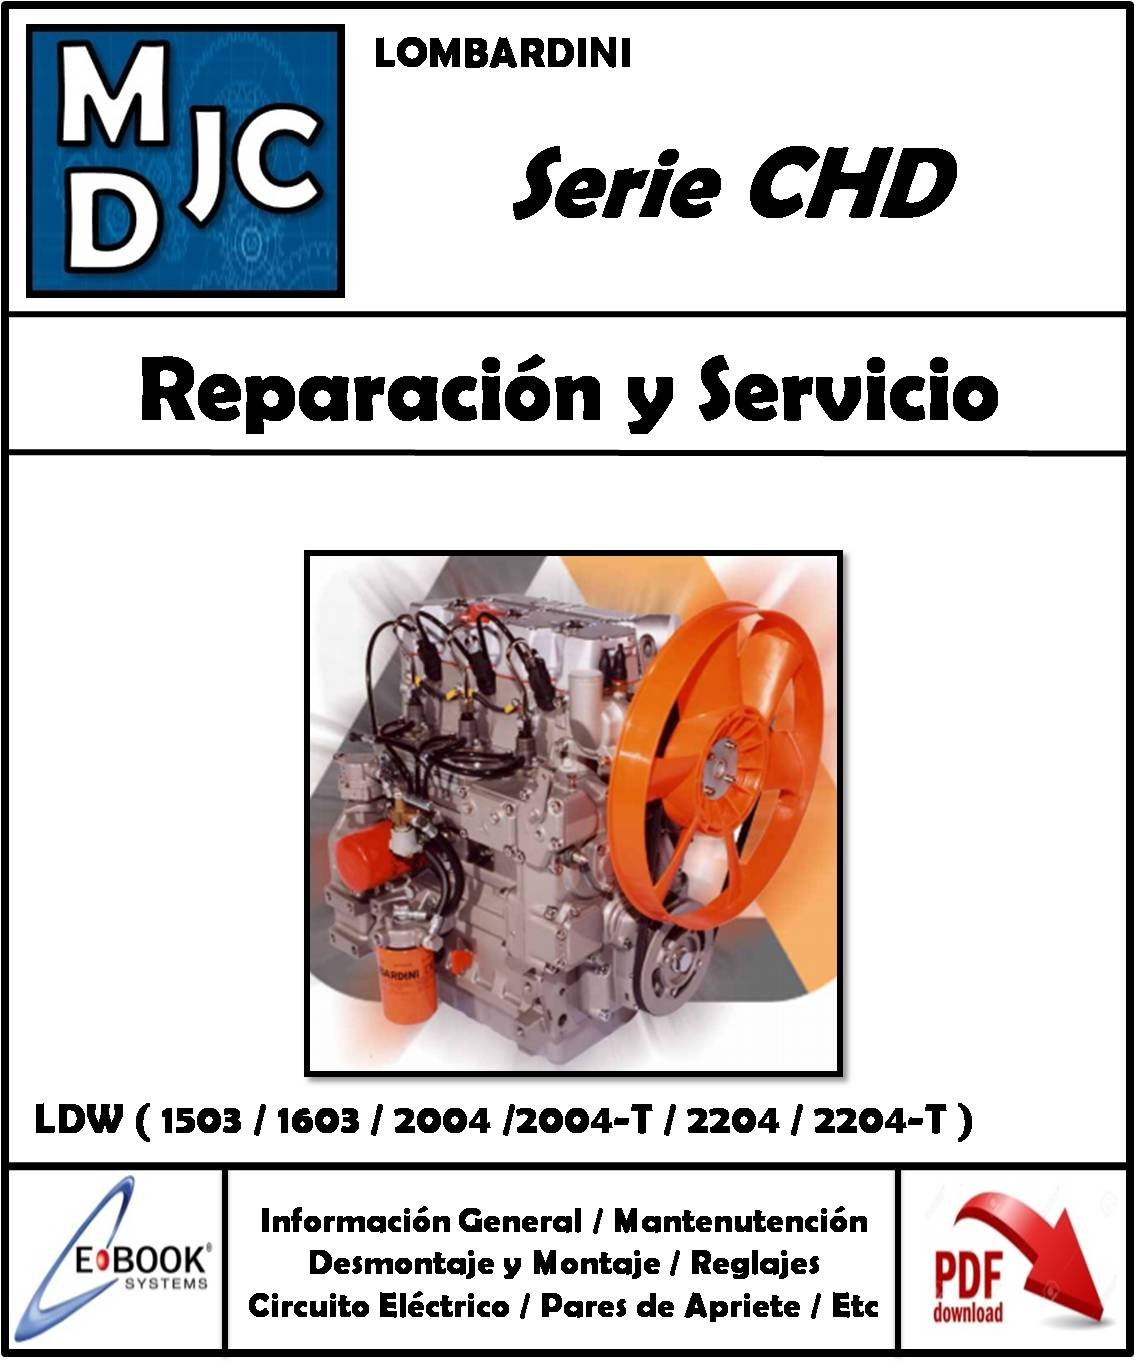 Lombardini Series CHD - LDW 1503 - 1603 - 2004 - 2004/T - 2204 - 2204/T